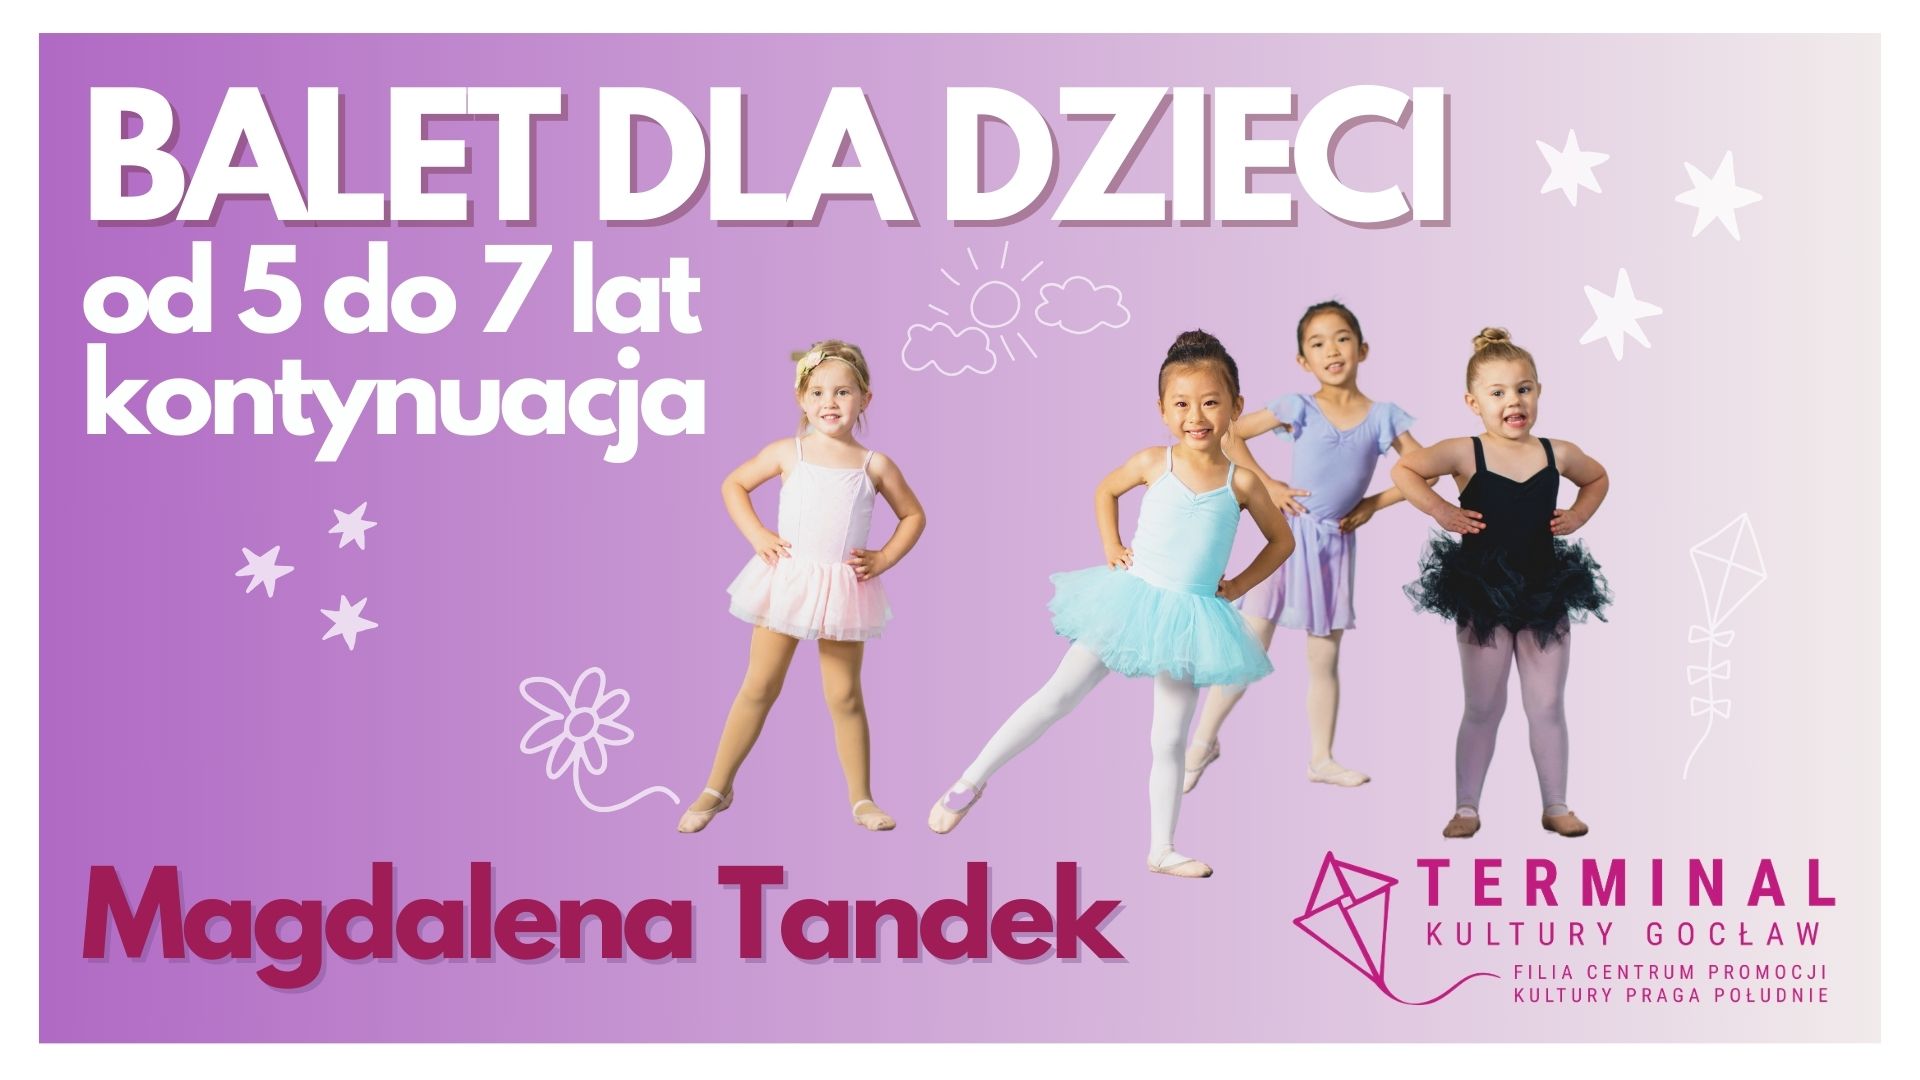 Balet dla dzieci od 5 do 7 lat  ( kontynuacja) Magdalena Tandek